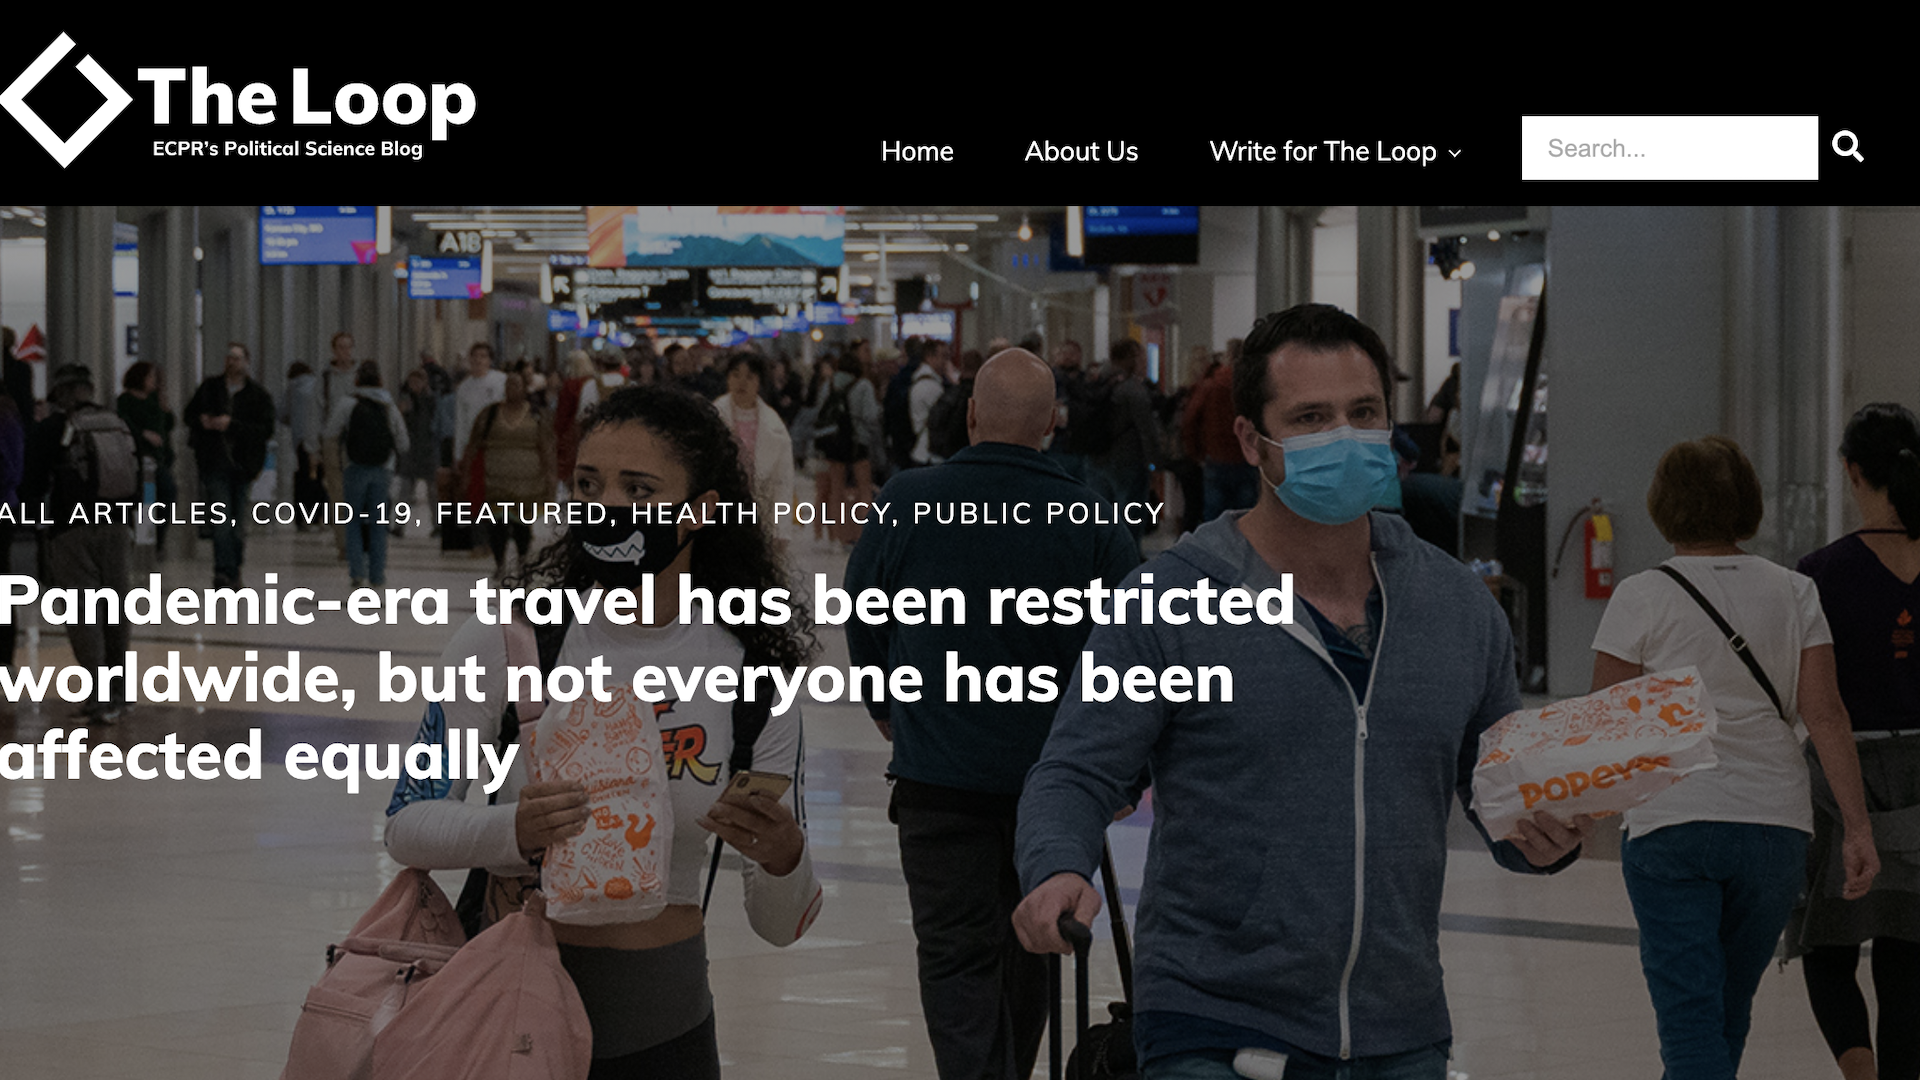 TheLoop Op-ed on Pandemic travel